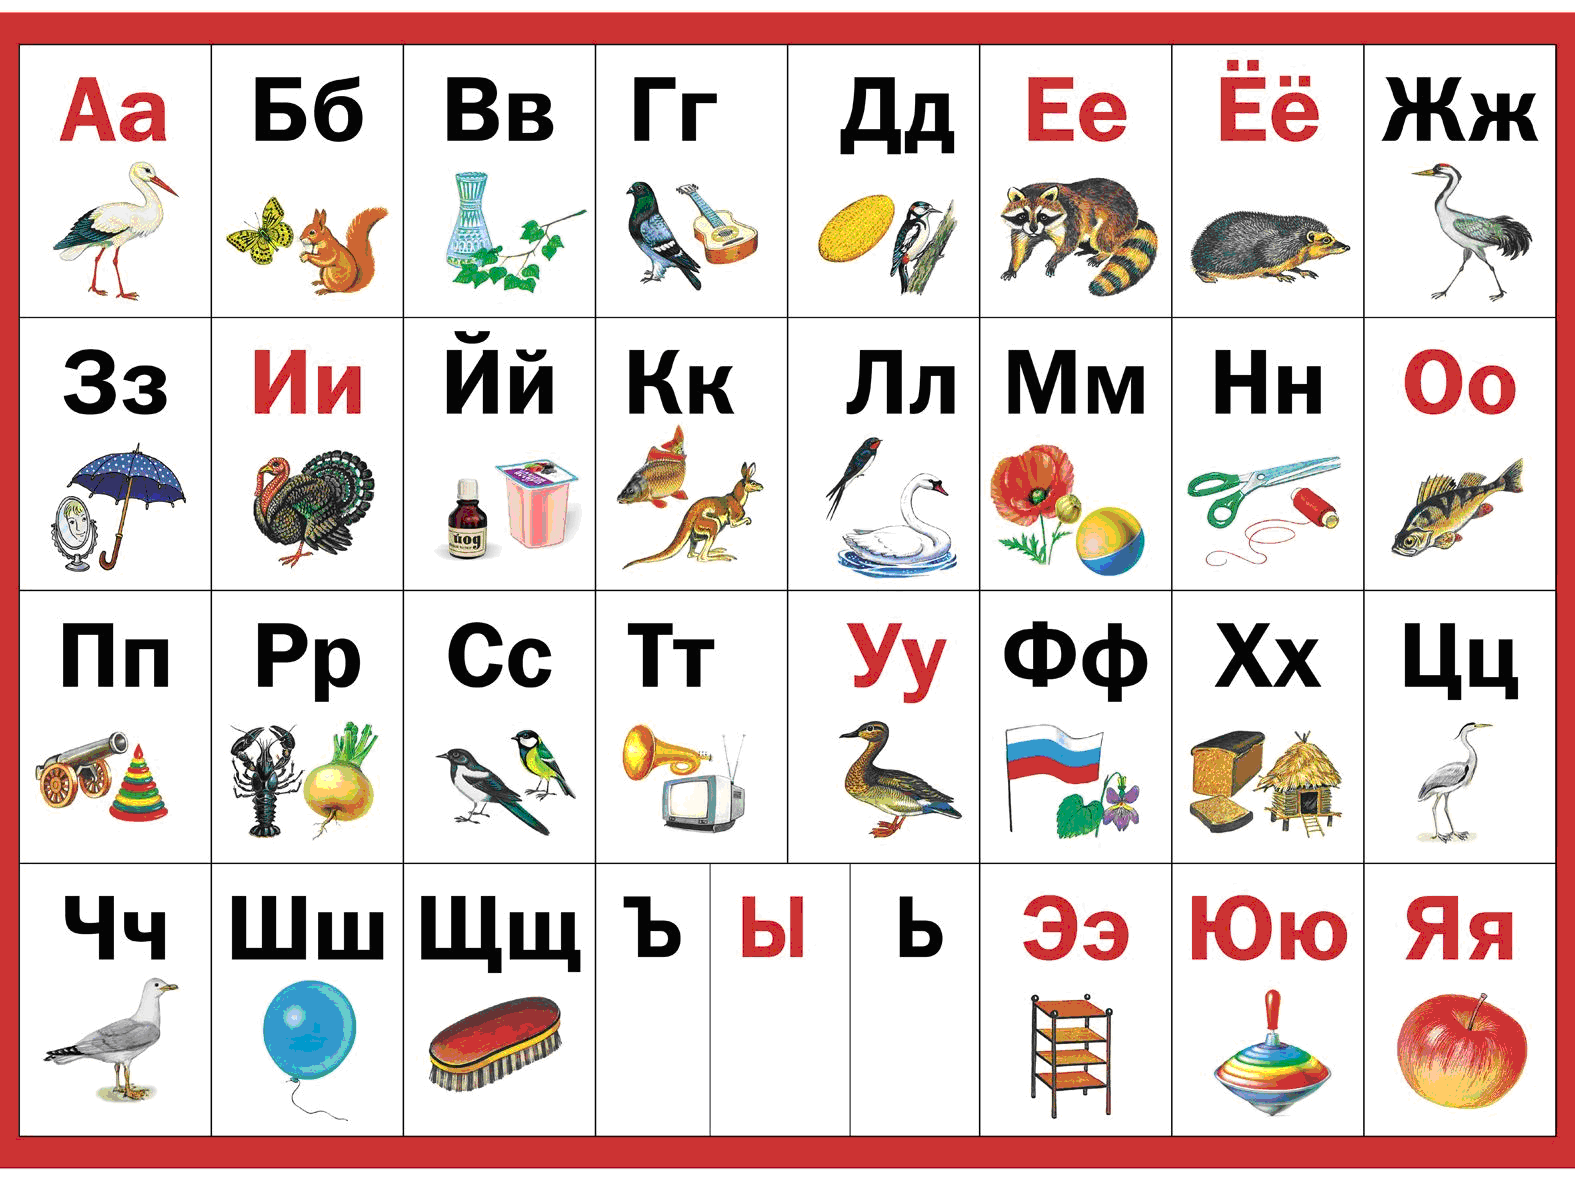 Вспомни алфавит. Алфавит для детей. Азбука в картинках. Алфавит русский для детей. Азбука картинка для детей.